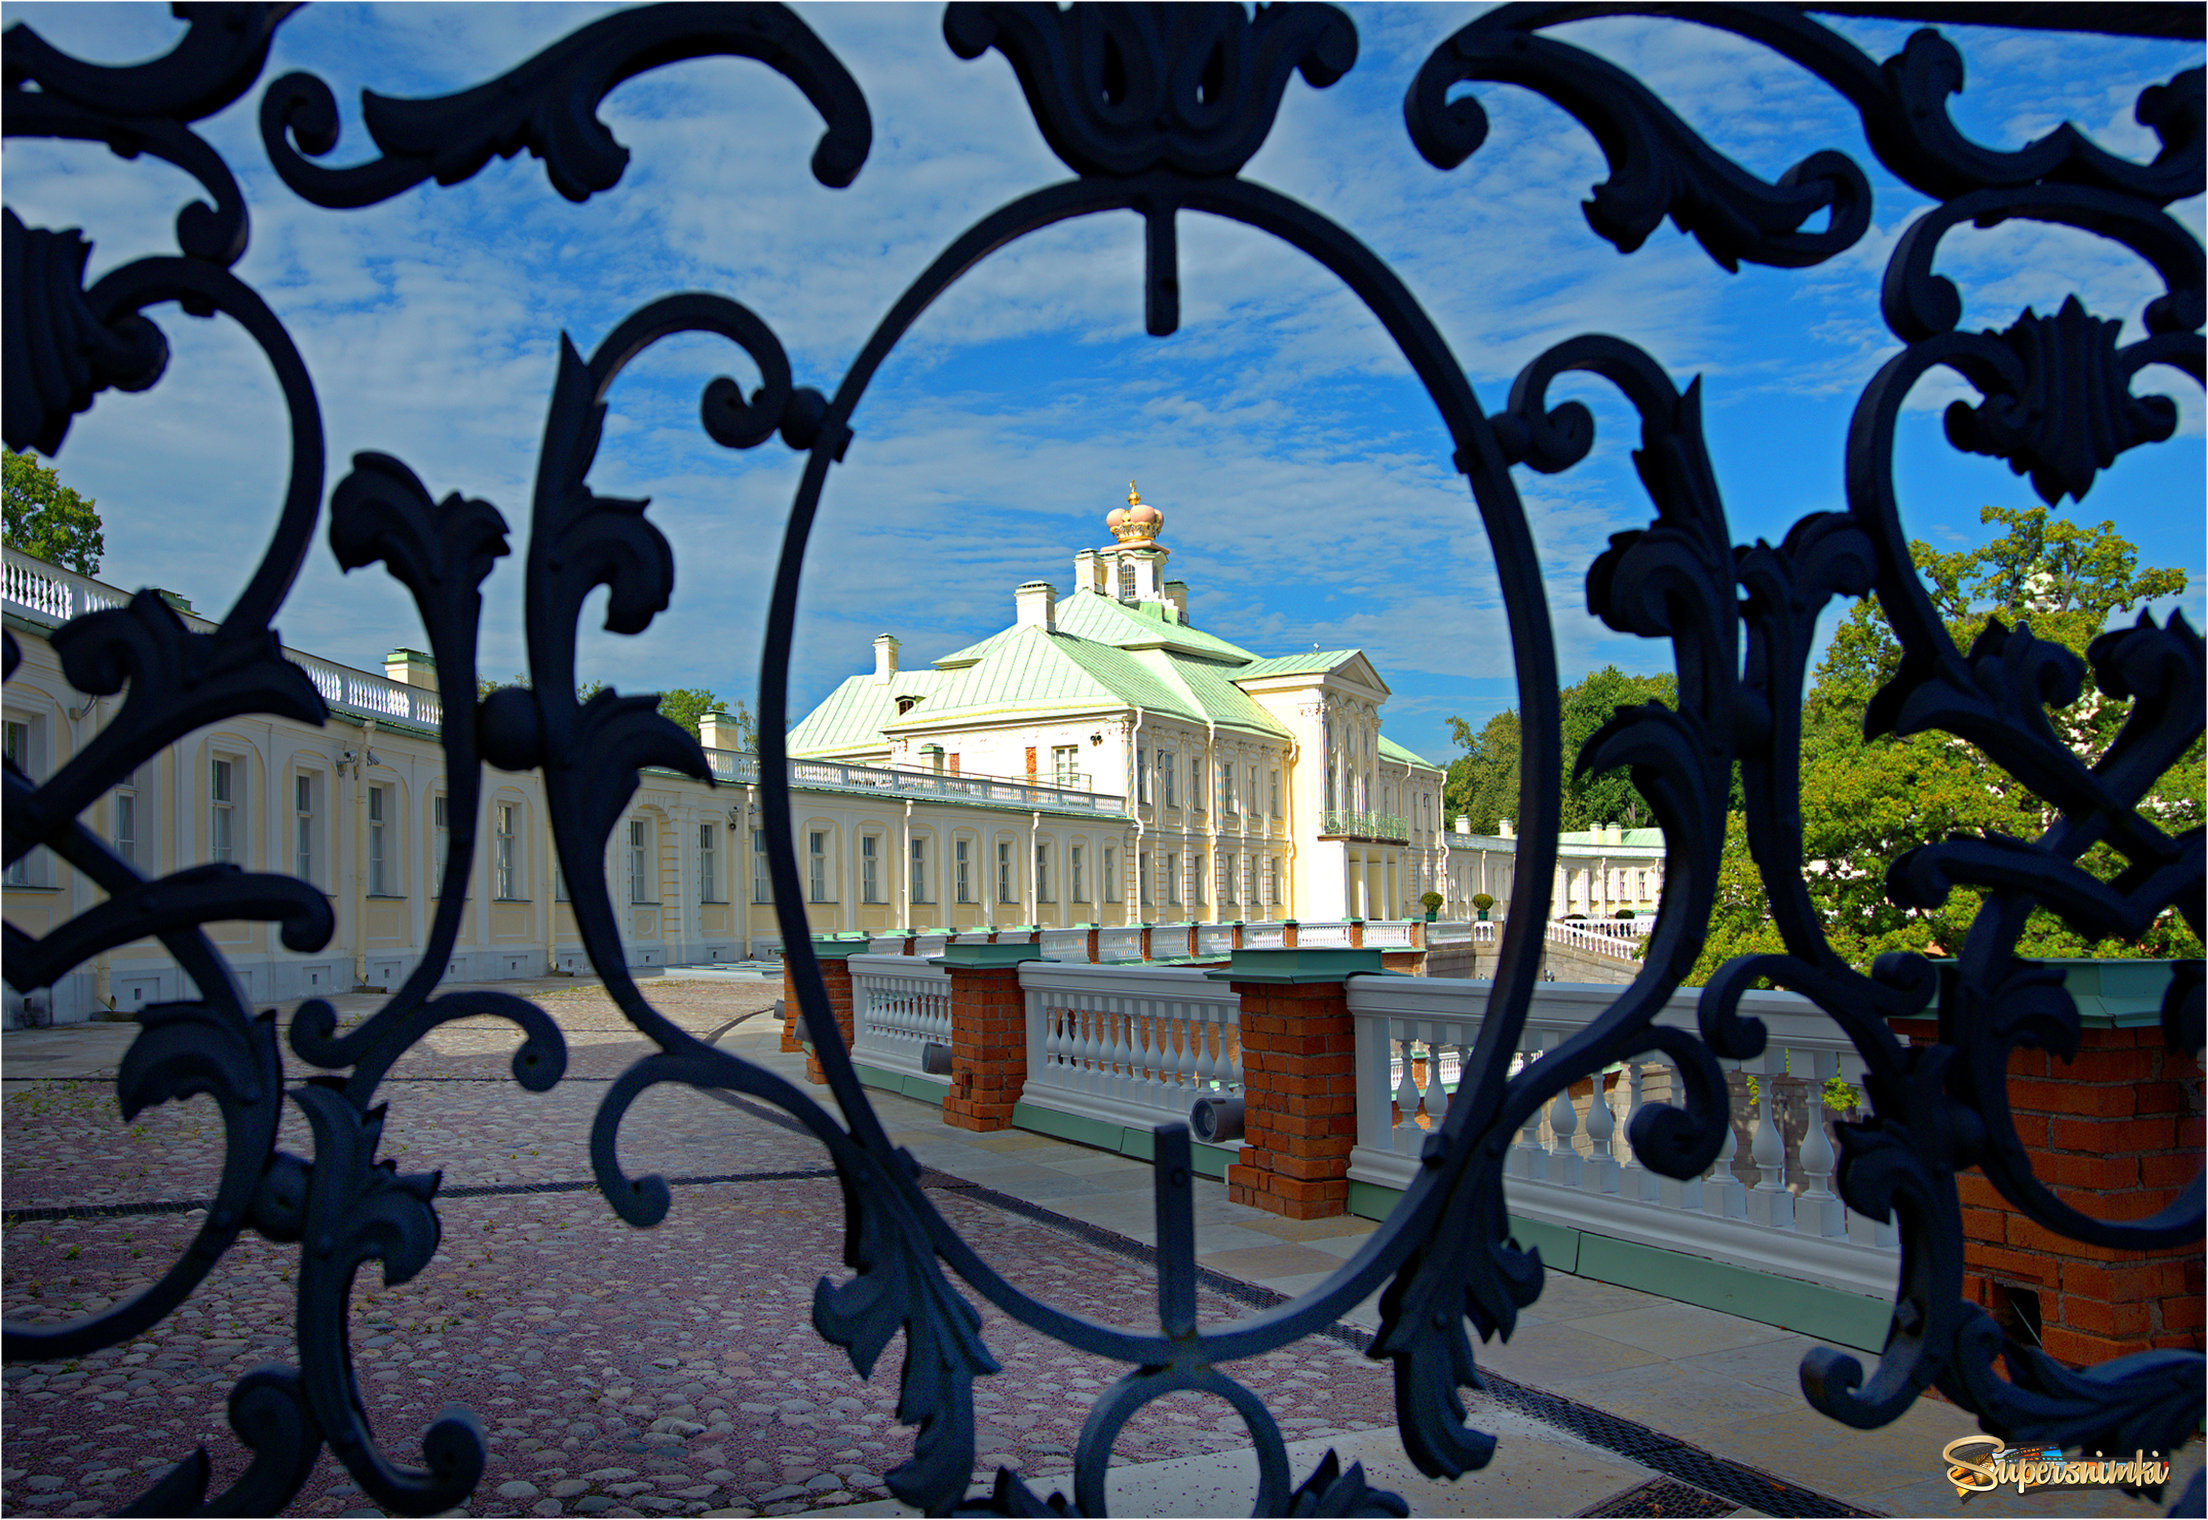 Большой Меньшиковский дворец